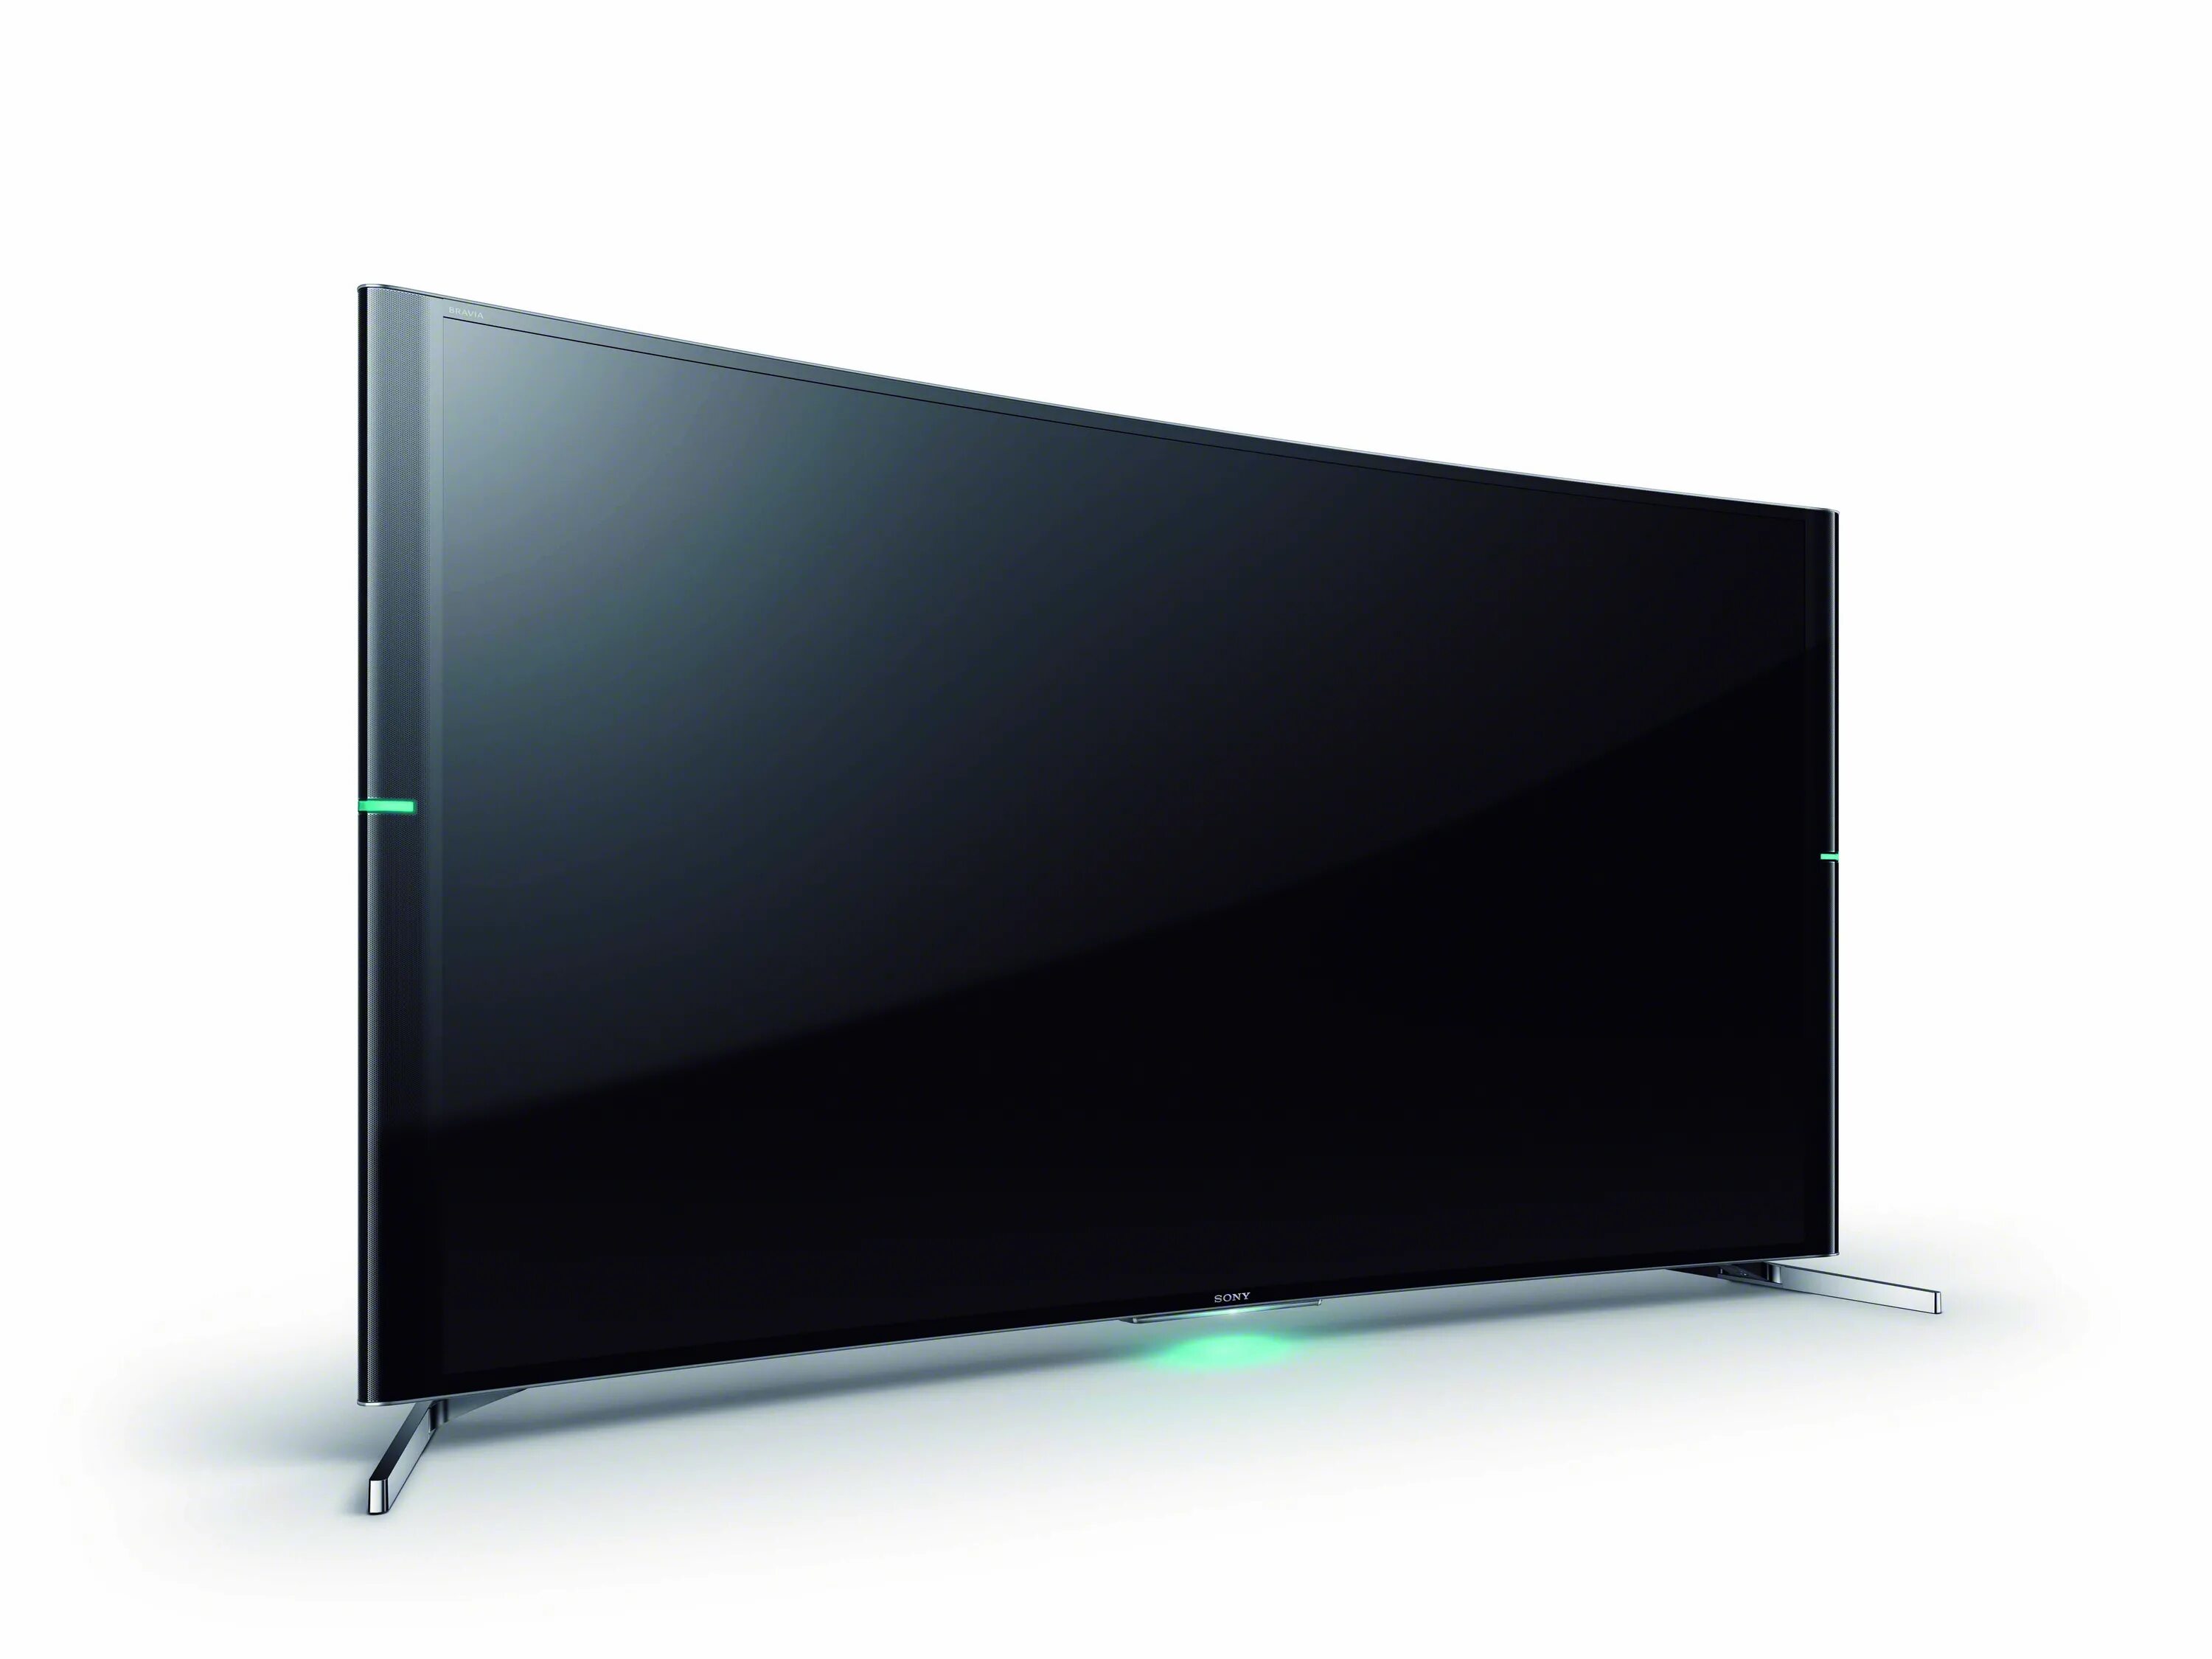 Телевизор Sony KD-65s9005b 65" (2014). Сони бравиа телевизор 55 дюймов. Сони бравиа 50 дюймов 4к. Телевизор Sony KD-75s9005b 75" (2014).